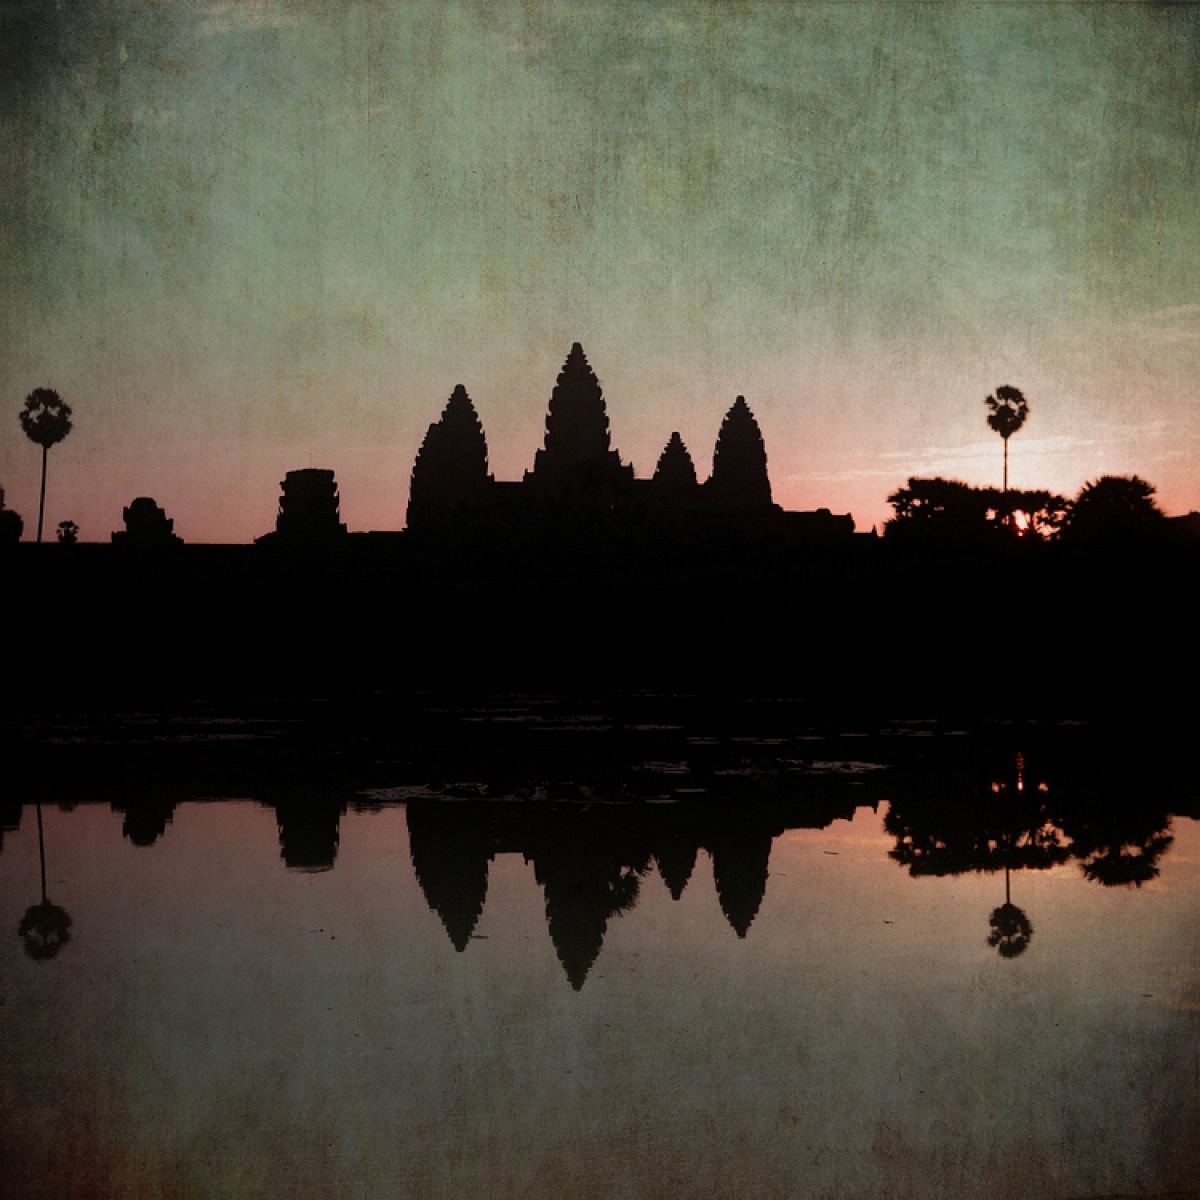 Angkor Wat 4:34 by Nadia  Attura